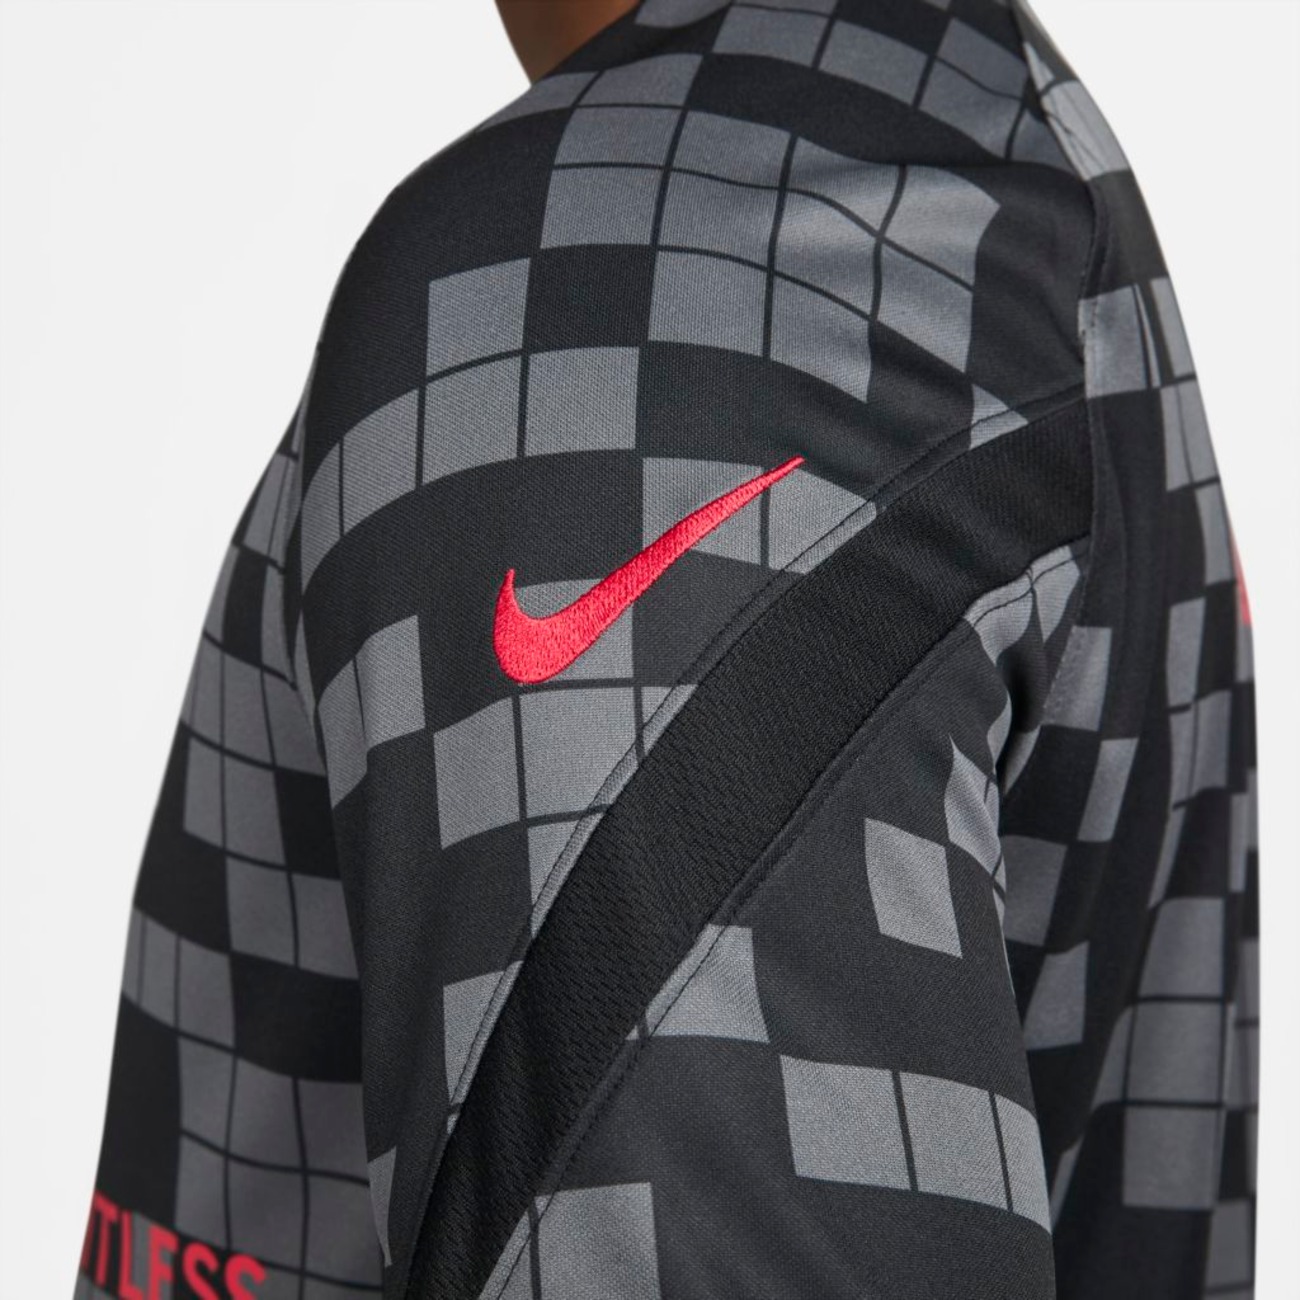 Camiseta Nike PSG Masculina - Foto 4